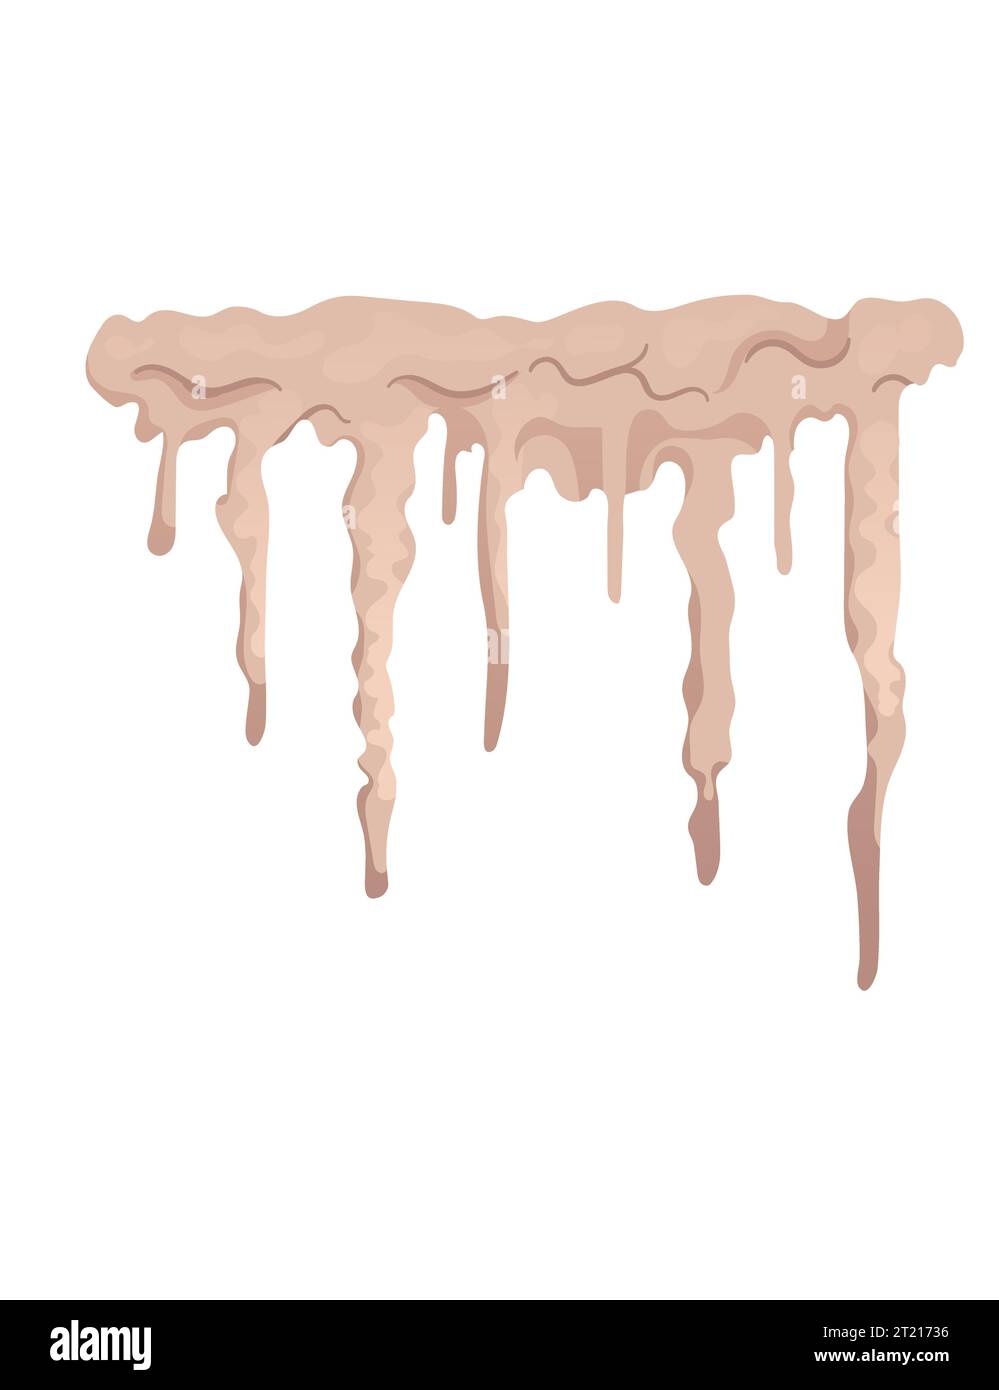 Pietra grotta colonna di stalattiti minerali formazioni geologiche di crescita naturale illustrazione vettoriale isolata su sfondo bianco Illustrazione Vettoriale